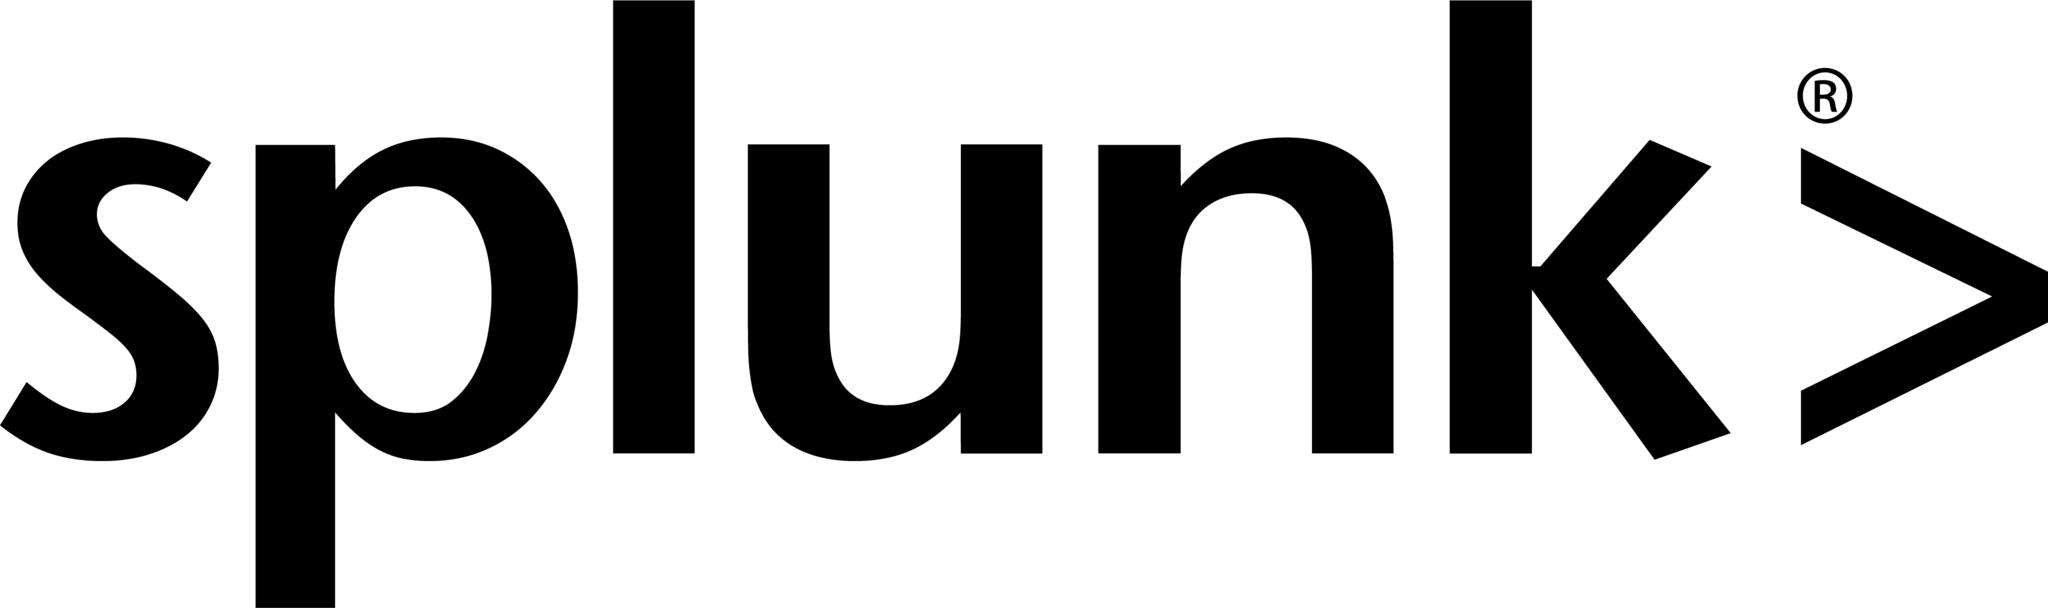 Splunk Conf 19 Logo, HD Png Download , Transparent Png Image - PNGitem